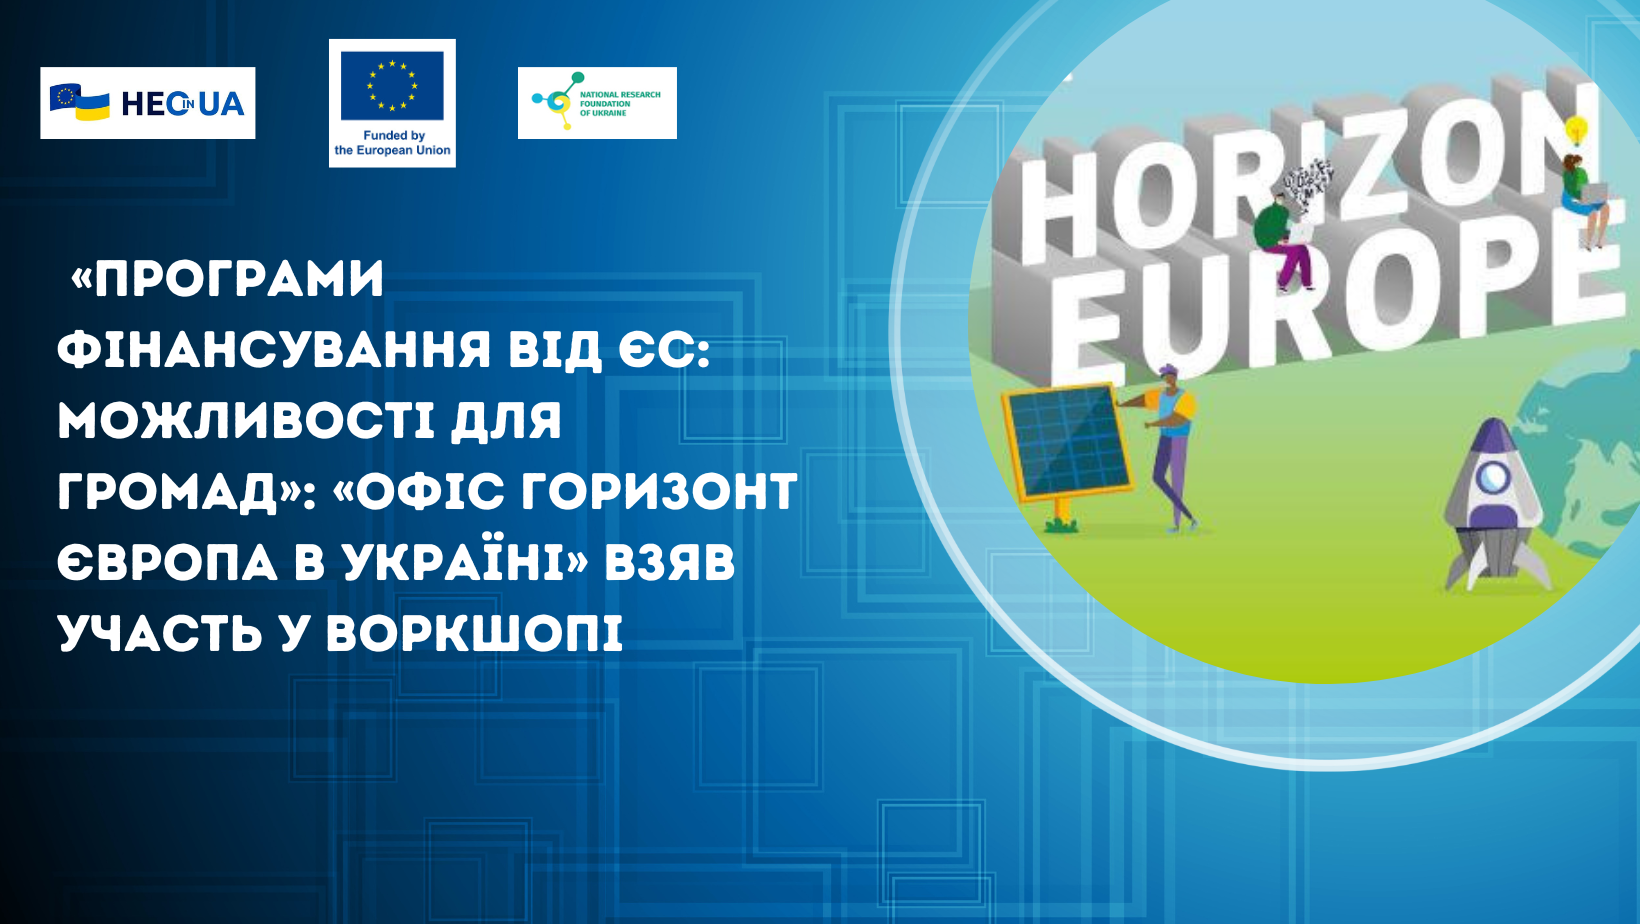 «Програми фінансування від ЄС: можливості для громад»: «Офіс Горизонт Європа в Україні» взяв участь у воркшопі